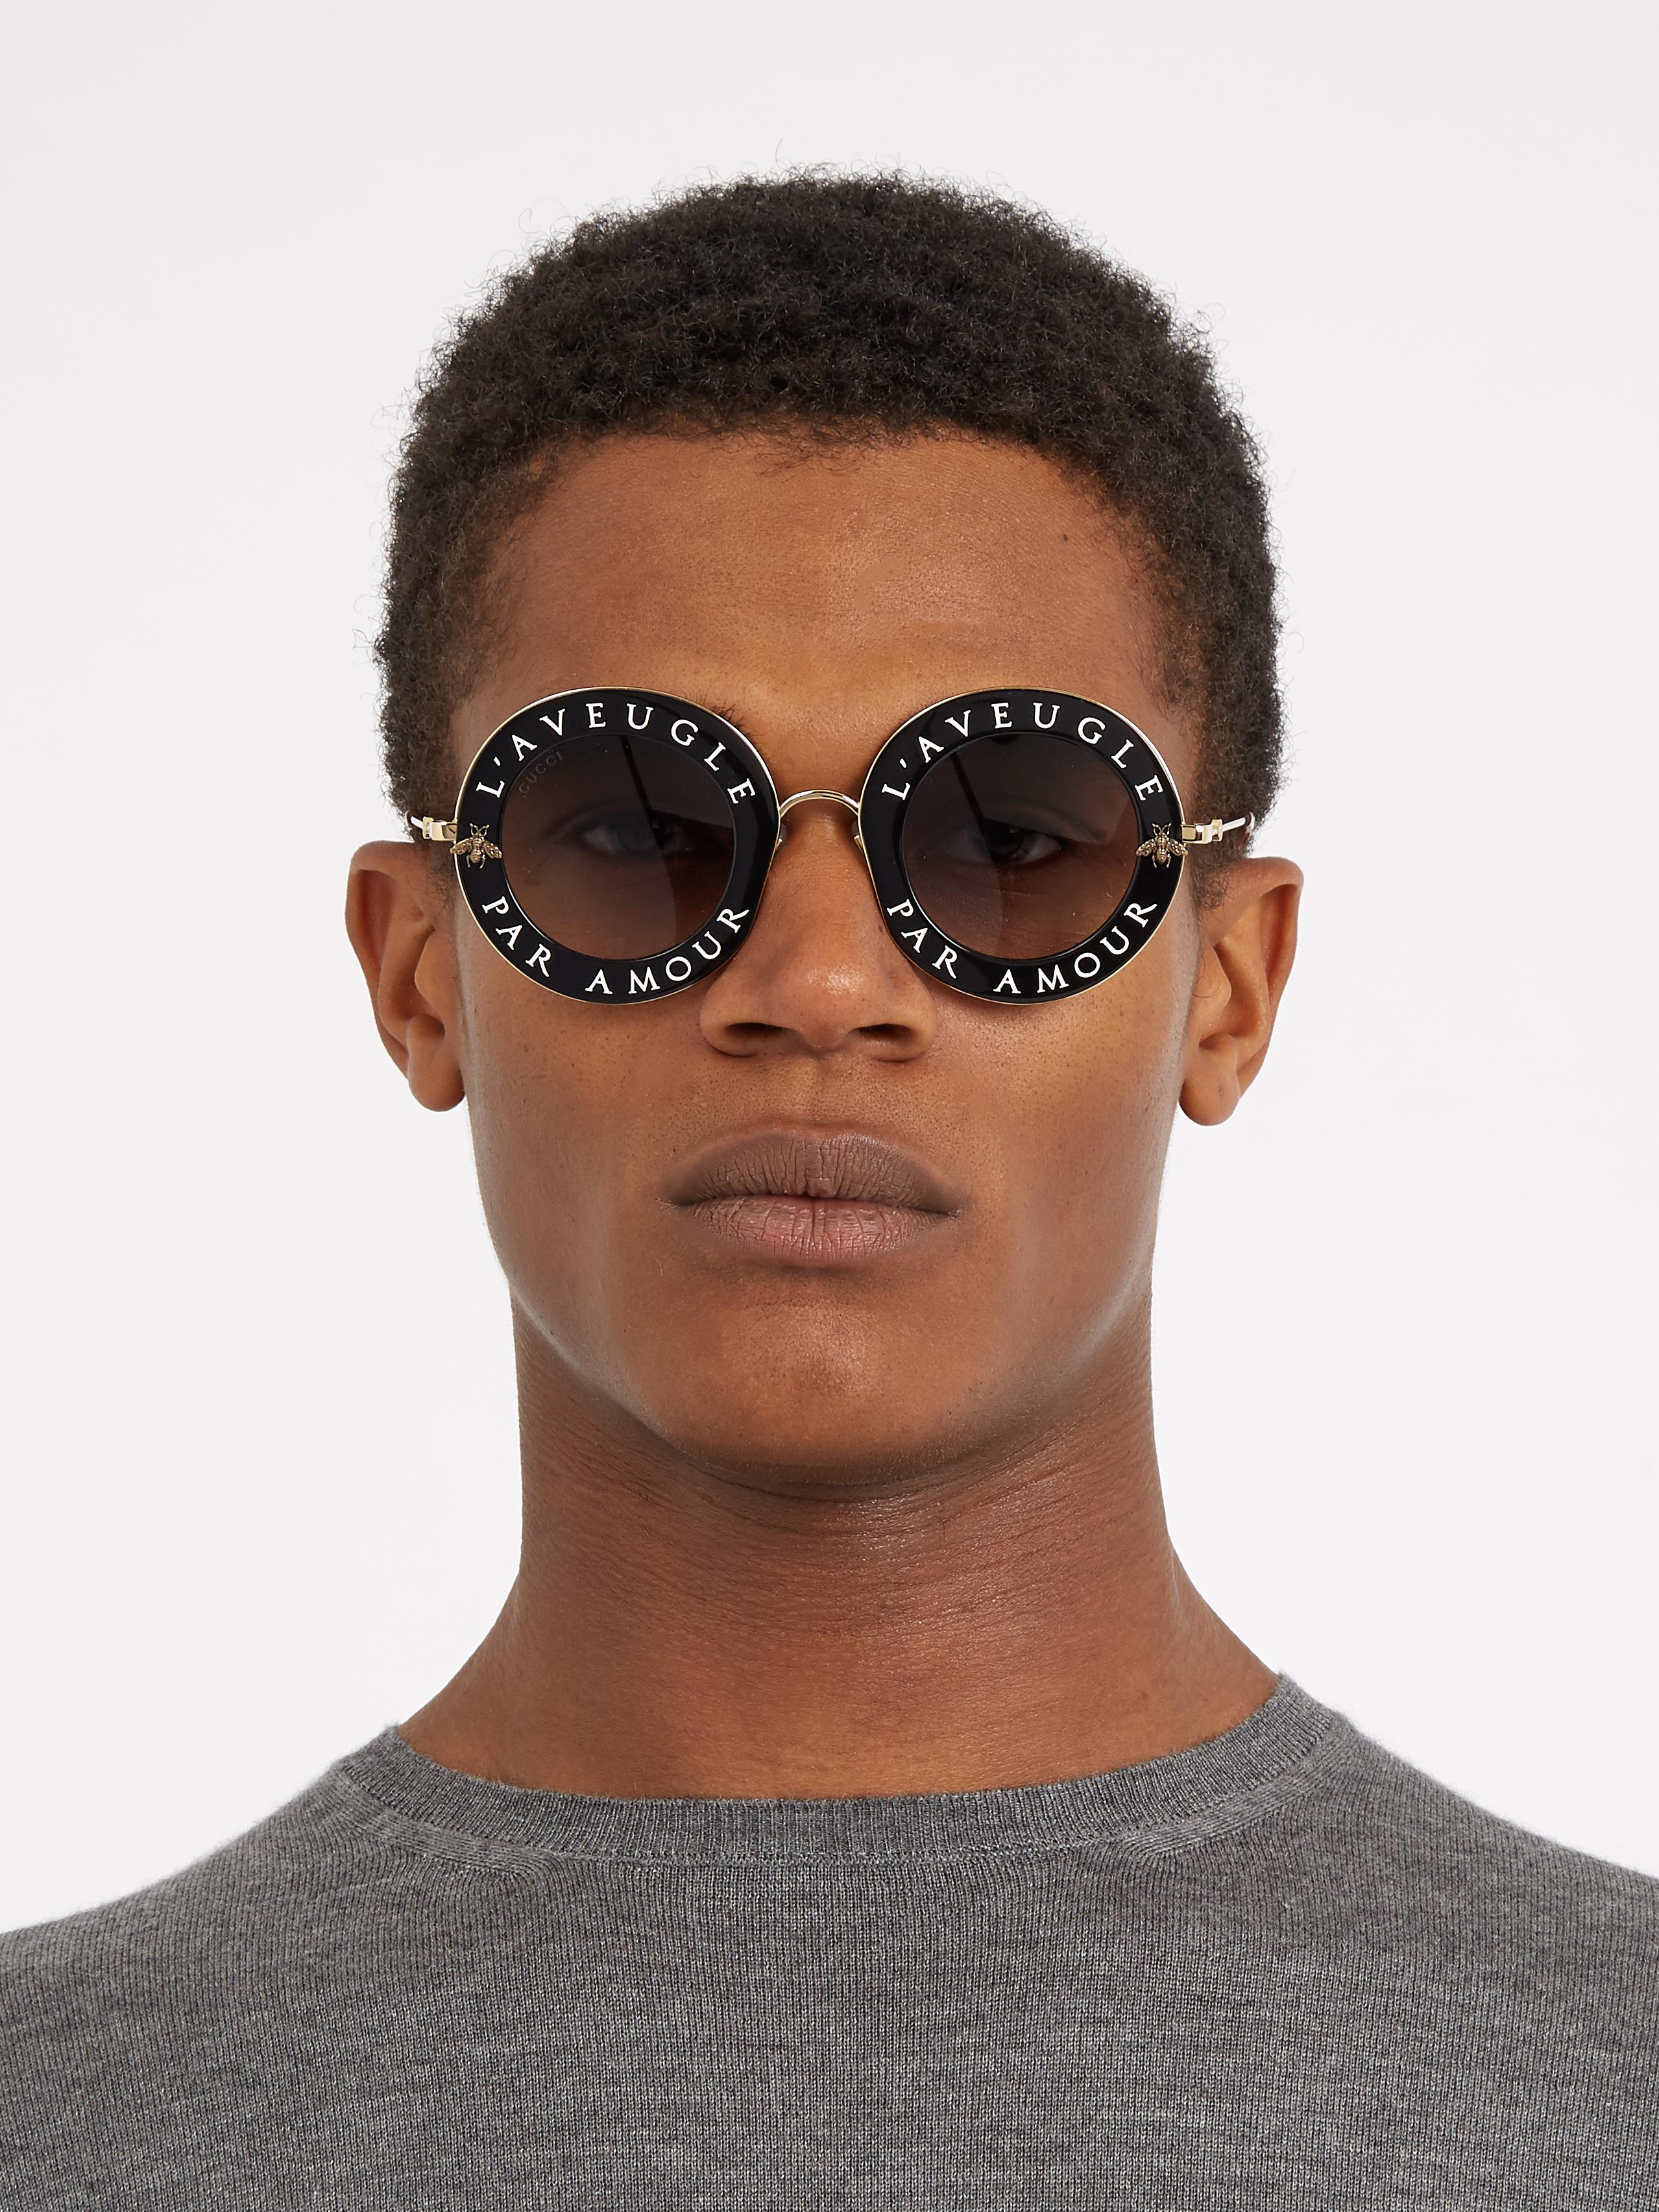 Gucci sunglasses par laveugle amour places